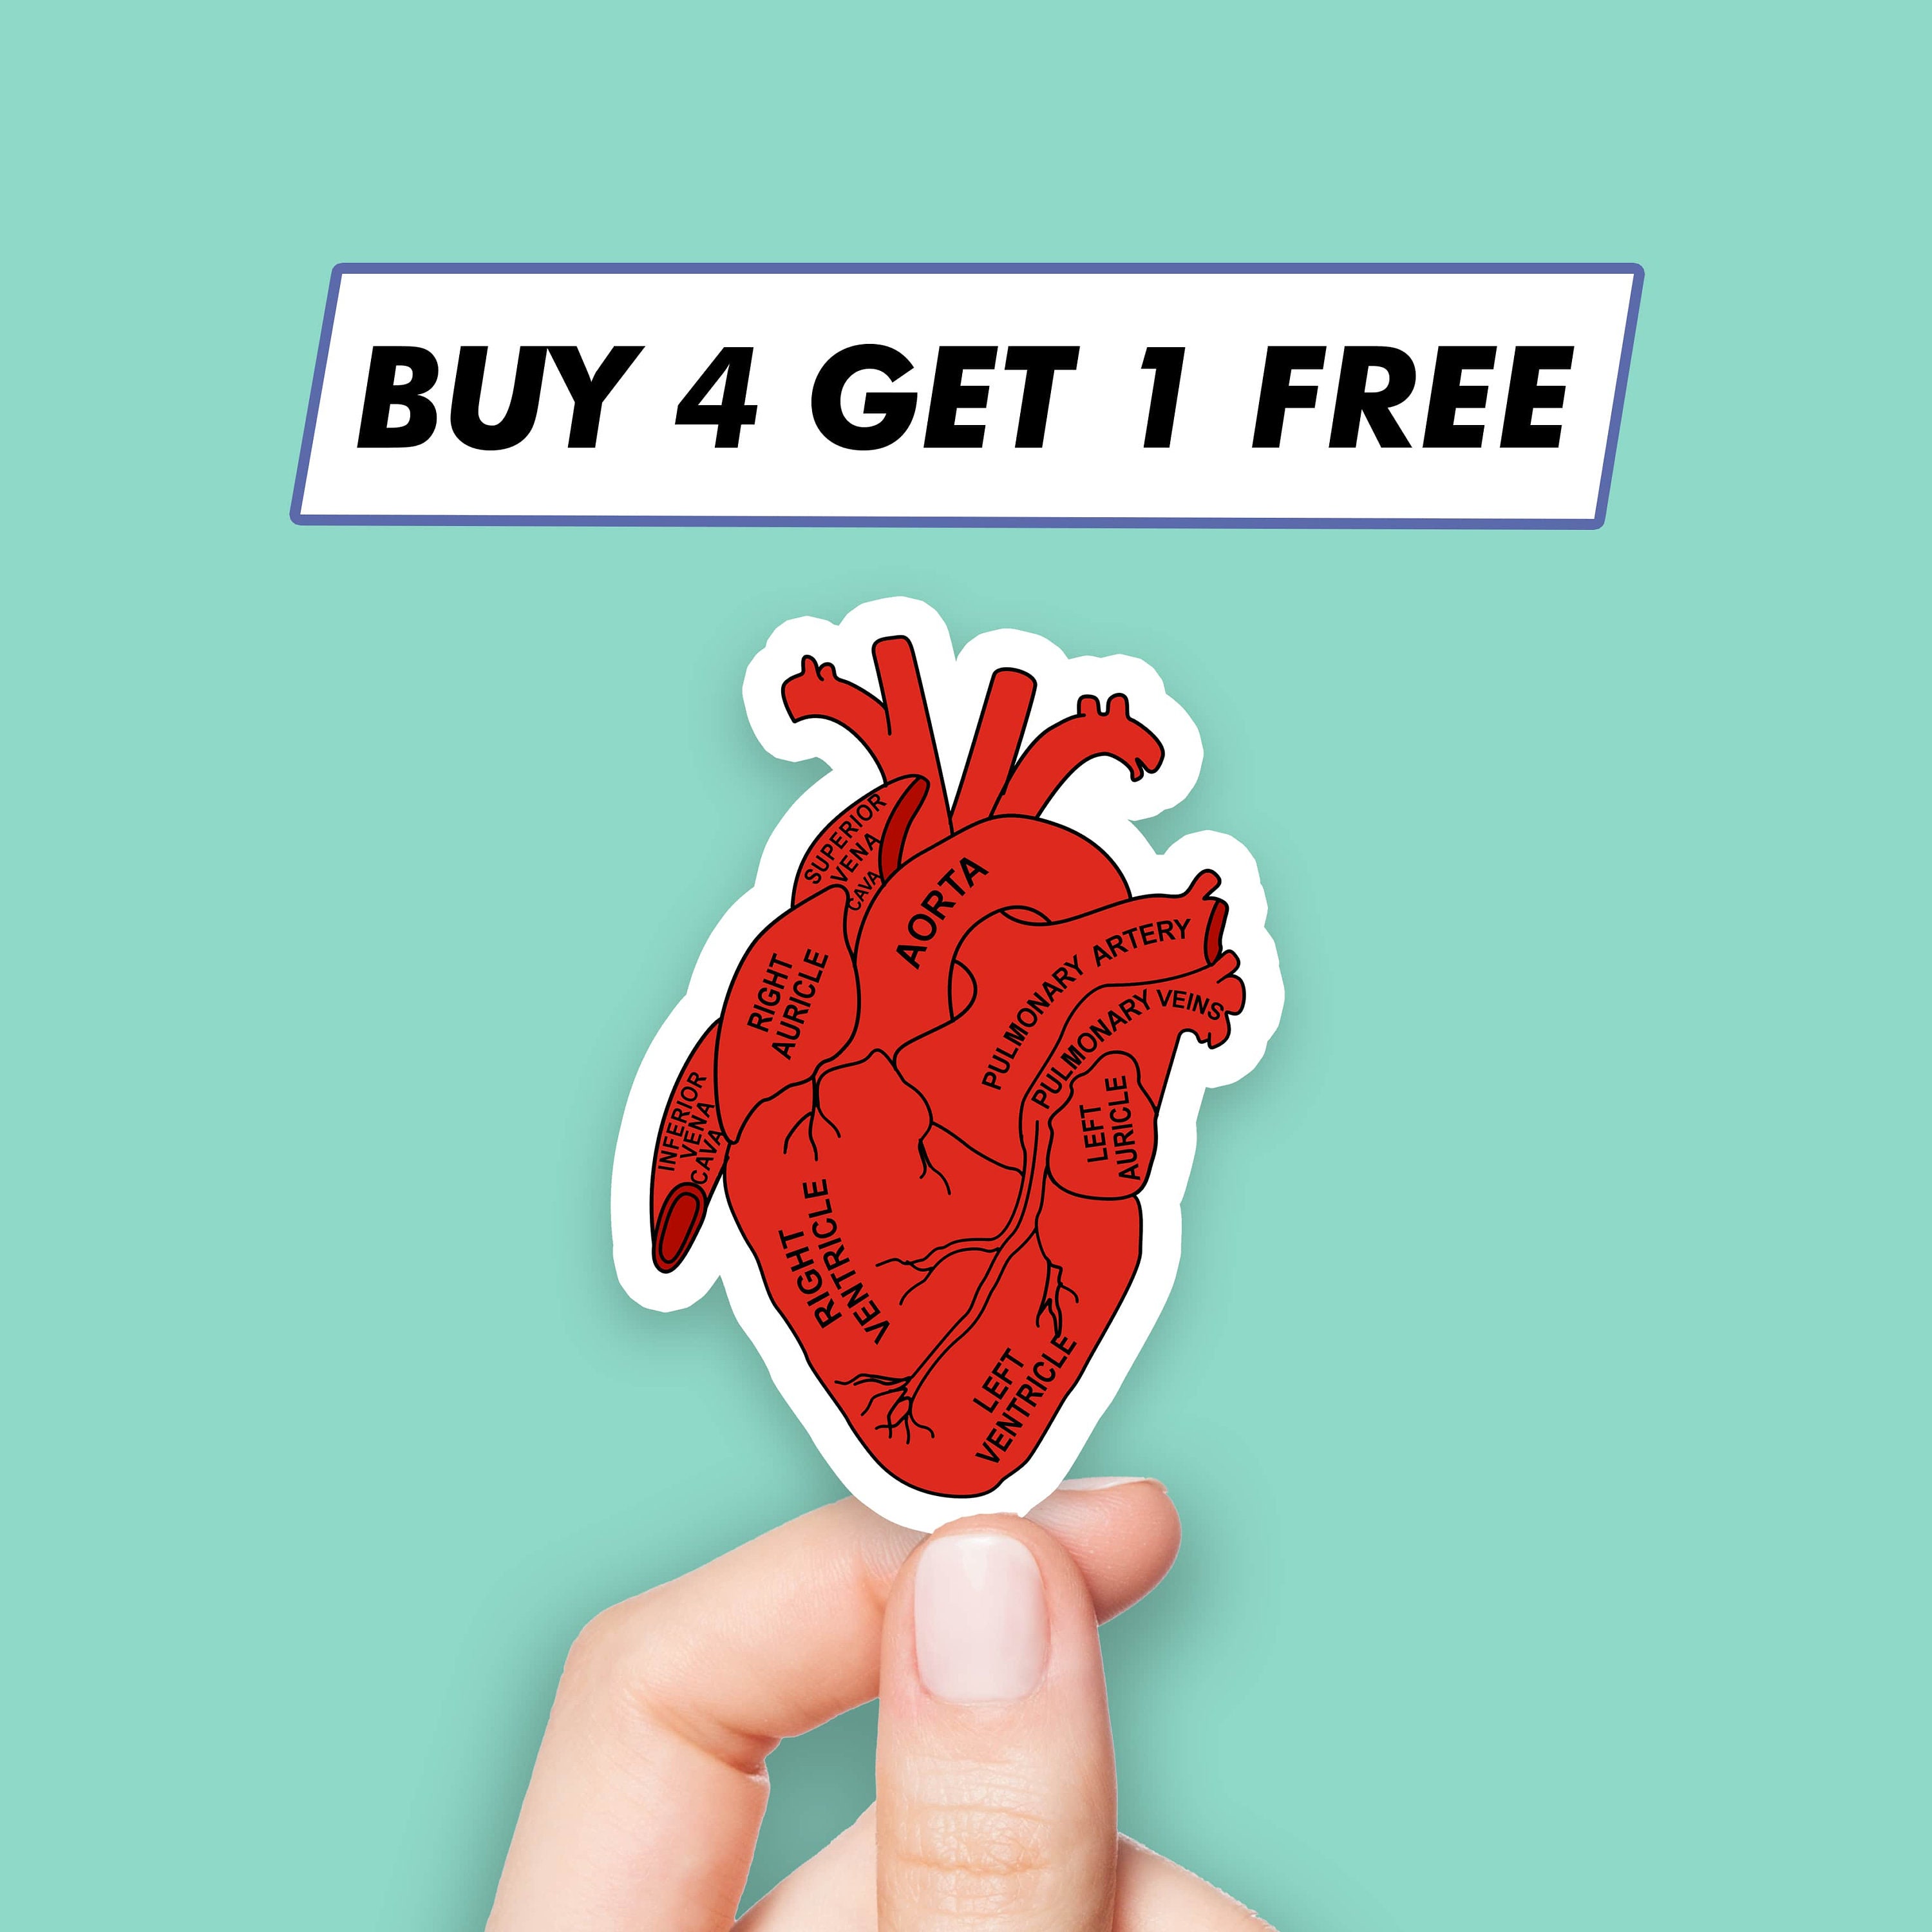 Glitter Heart Stickers, Heart Shape Stickers, Heart Sticker